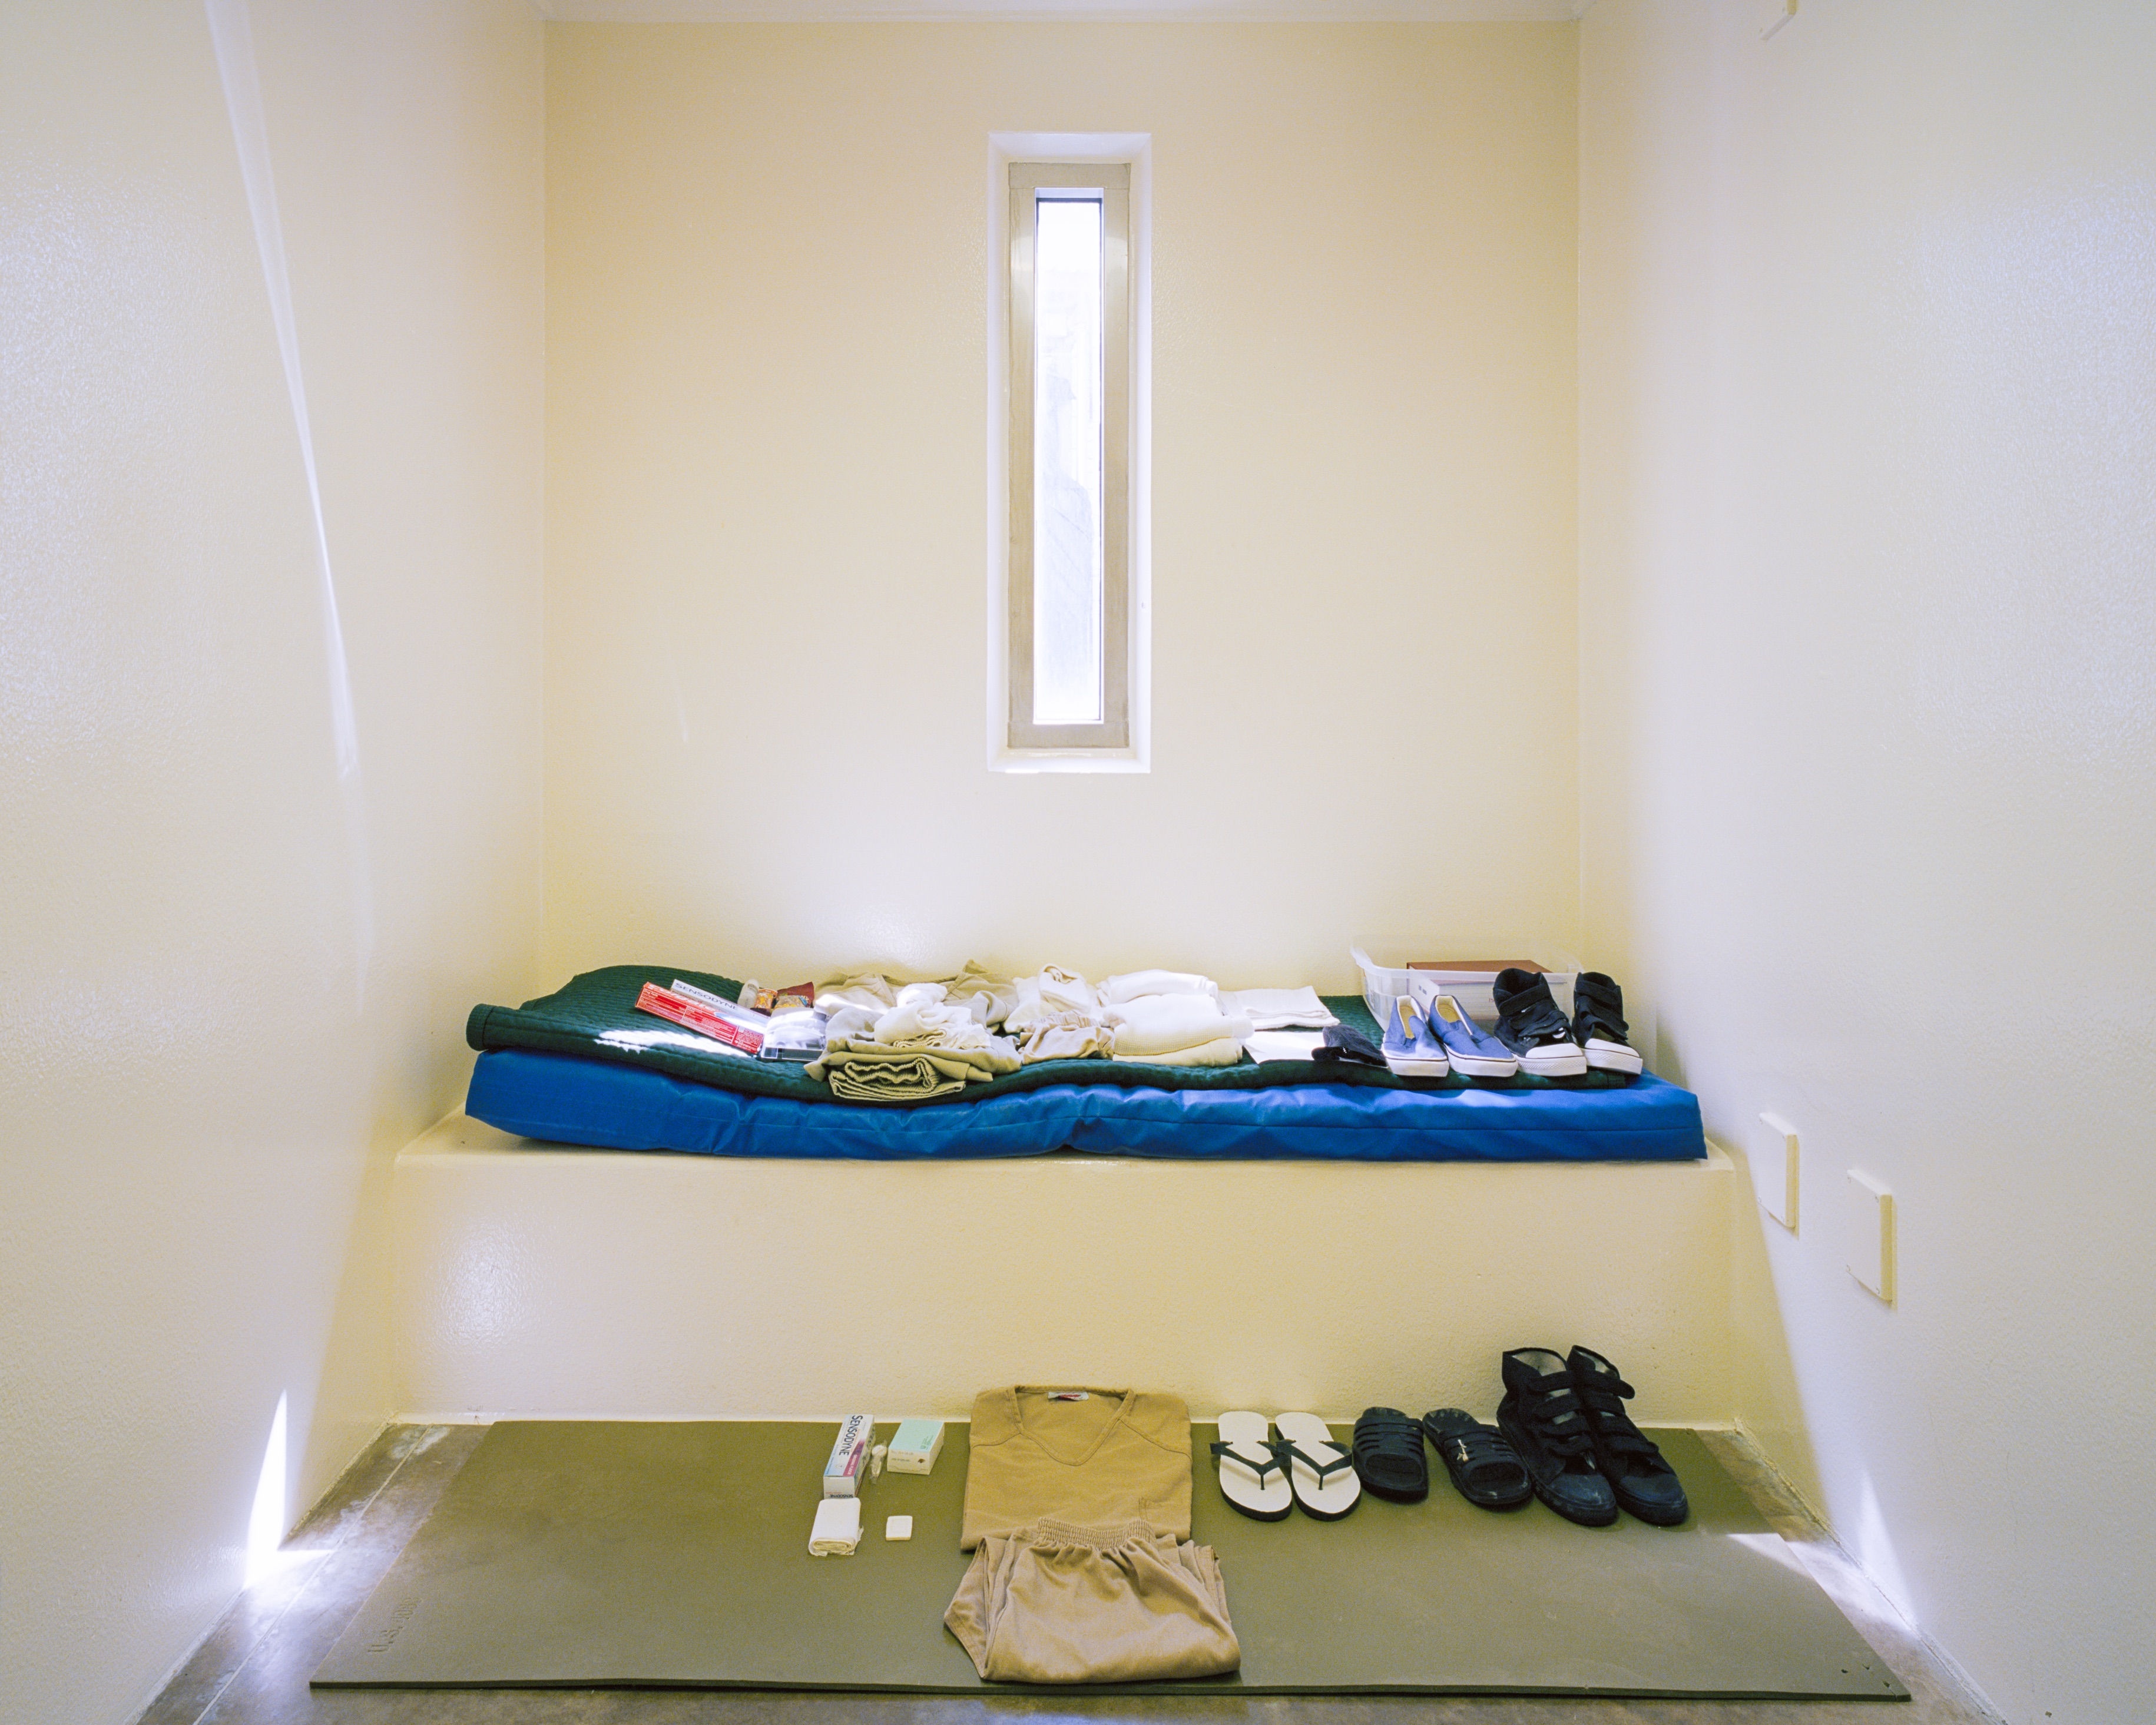 Artikel für den persönlichen Komfort der Gefangenen: Schuhe, Hygieneartikel, Unterwäsche. (c) Debi Cornwall